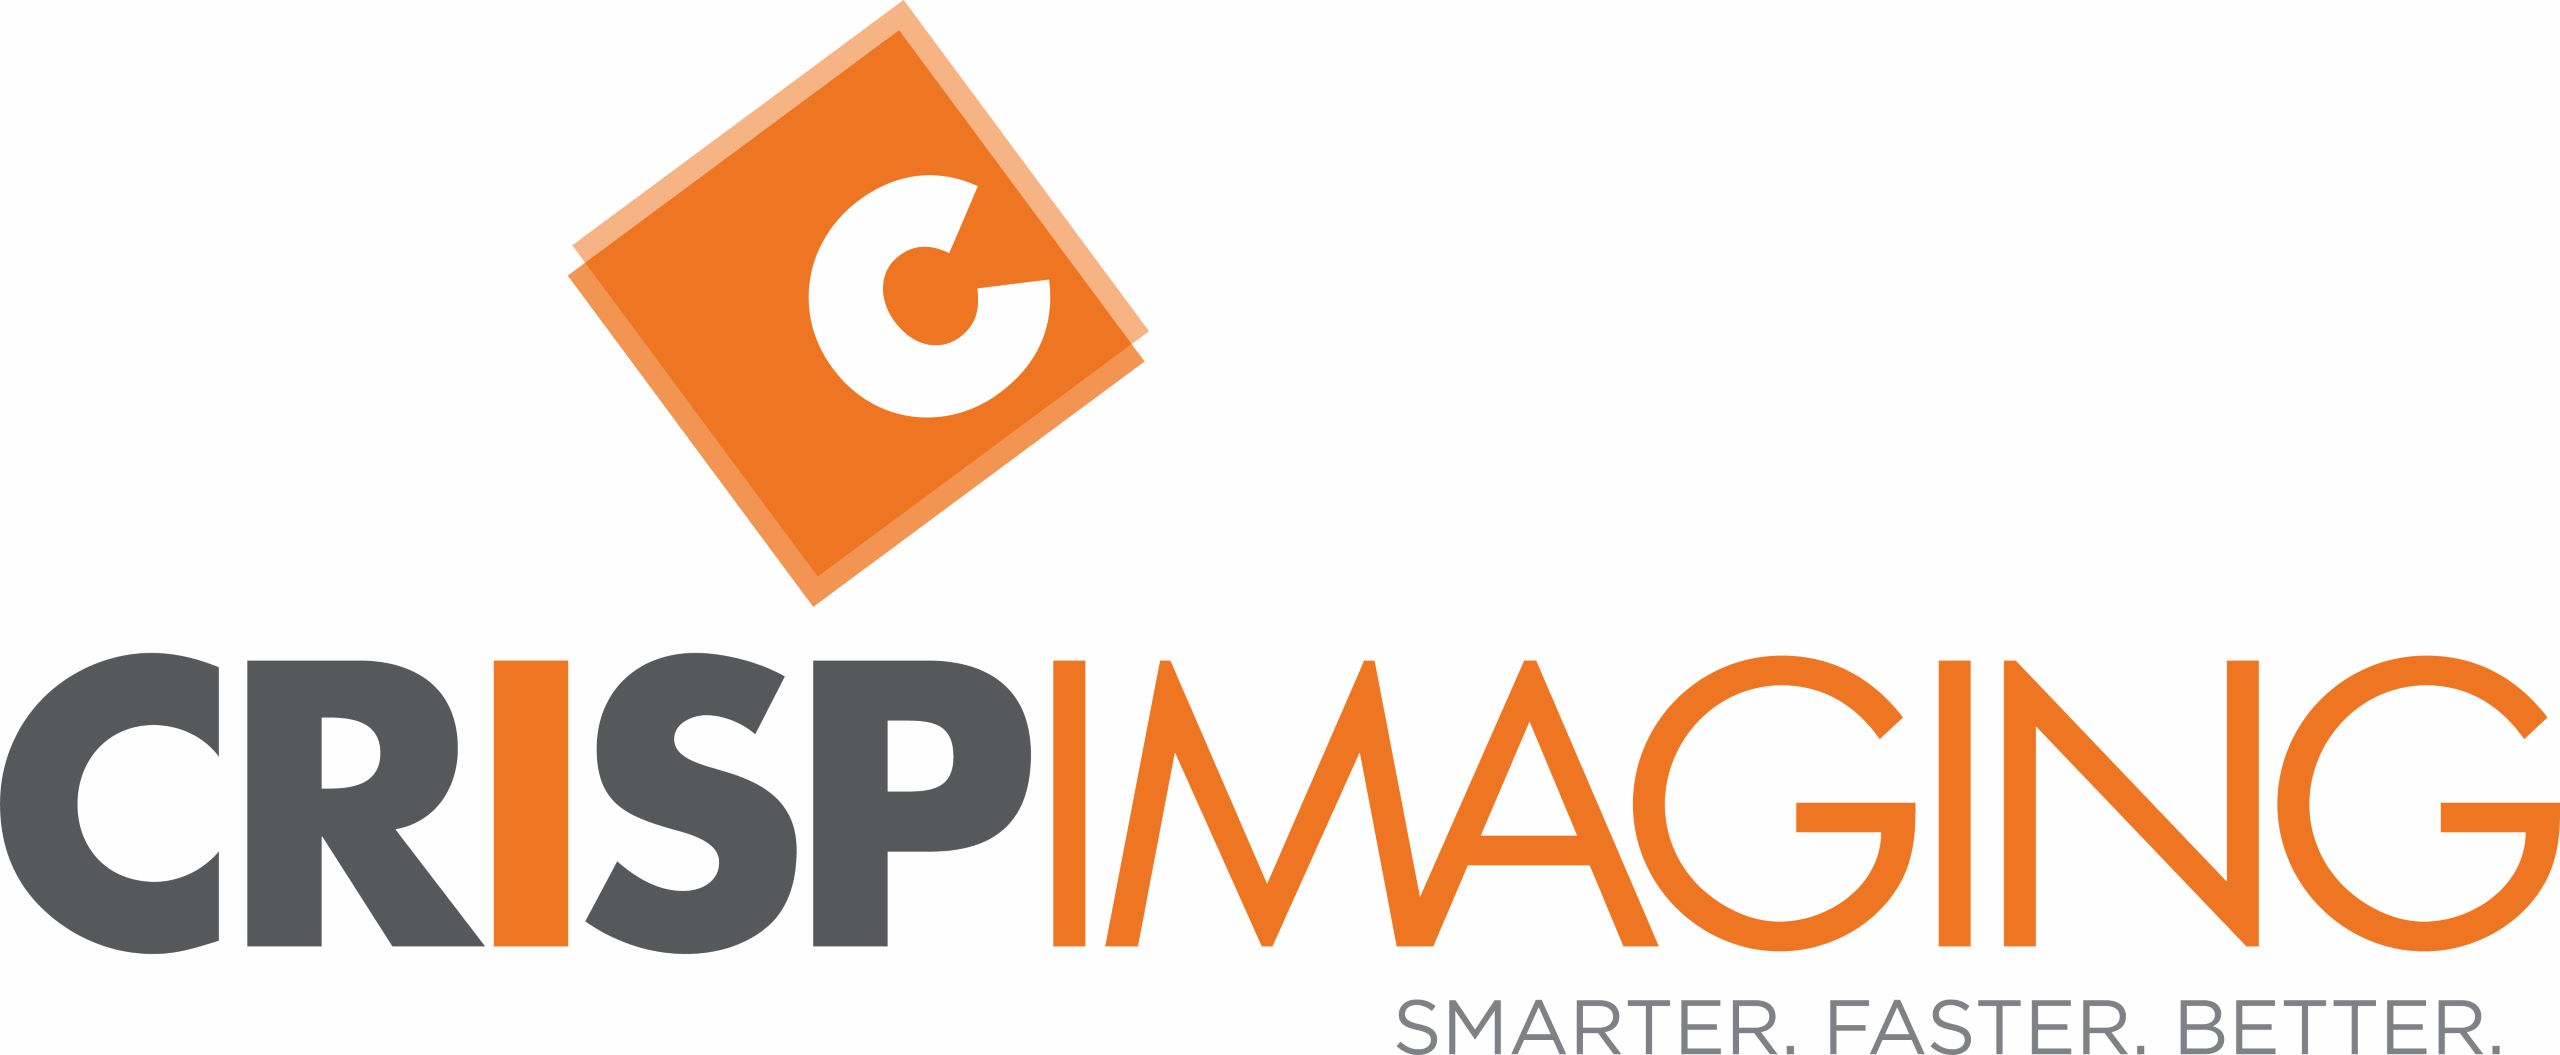 Crisp Imaging Logo PMS (002)